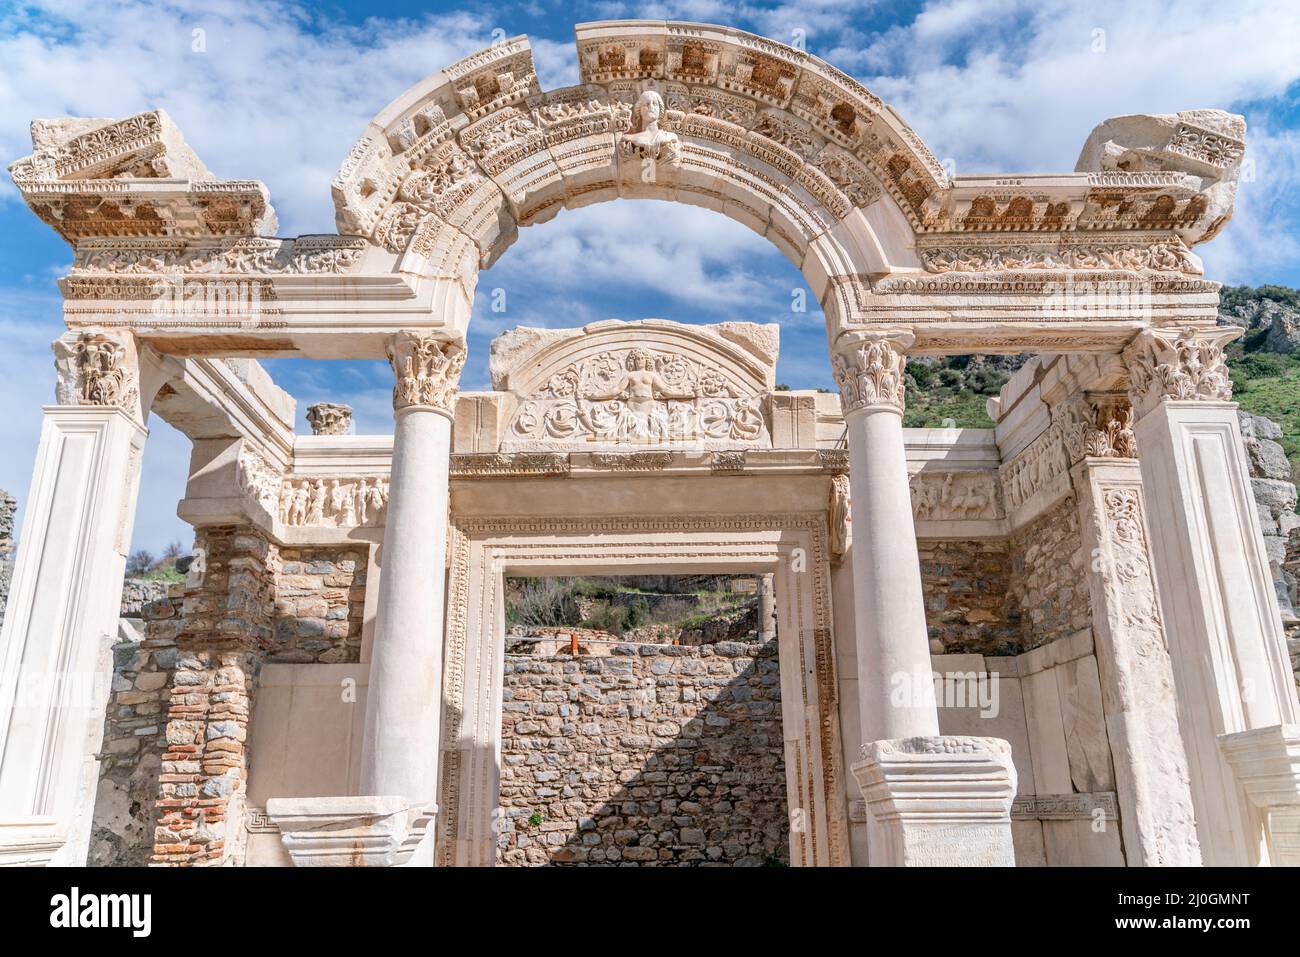 EFESO, TURCHIA: Rilievi marmorei nella storica città antica di Efeso, a Selcuk,Izmir,Turchia.Figura di Medusa con ornamenti di AC Foto Stock